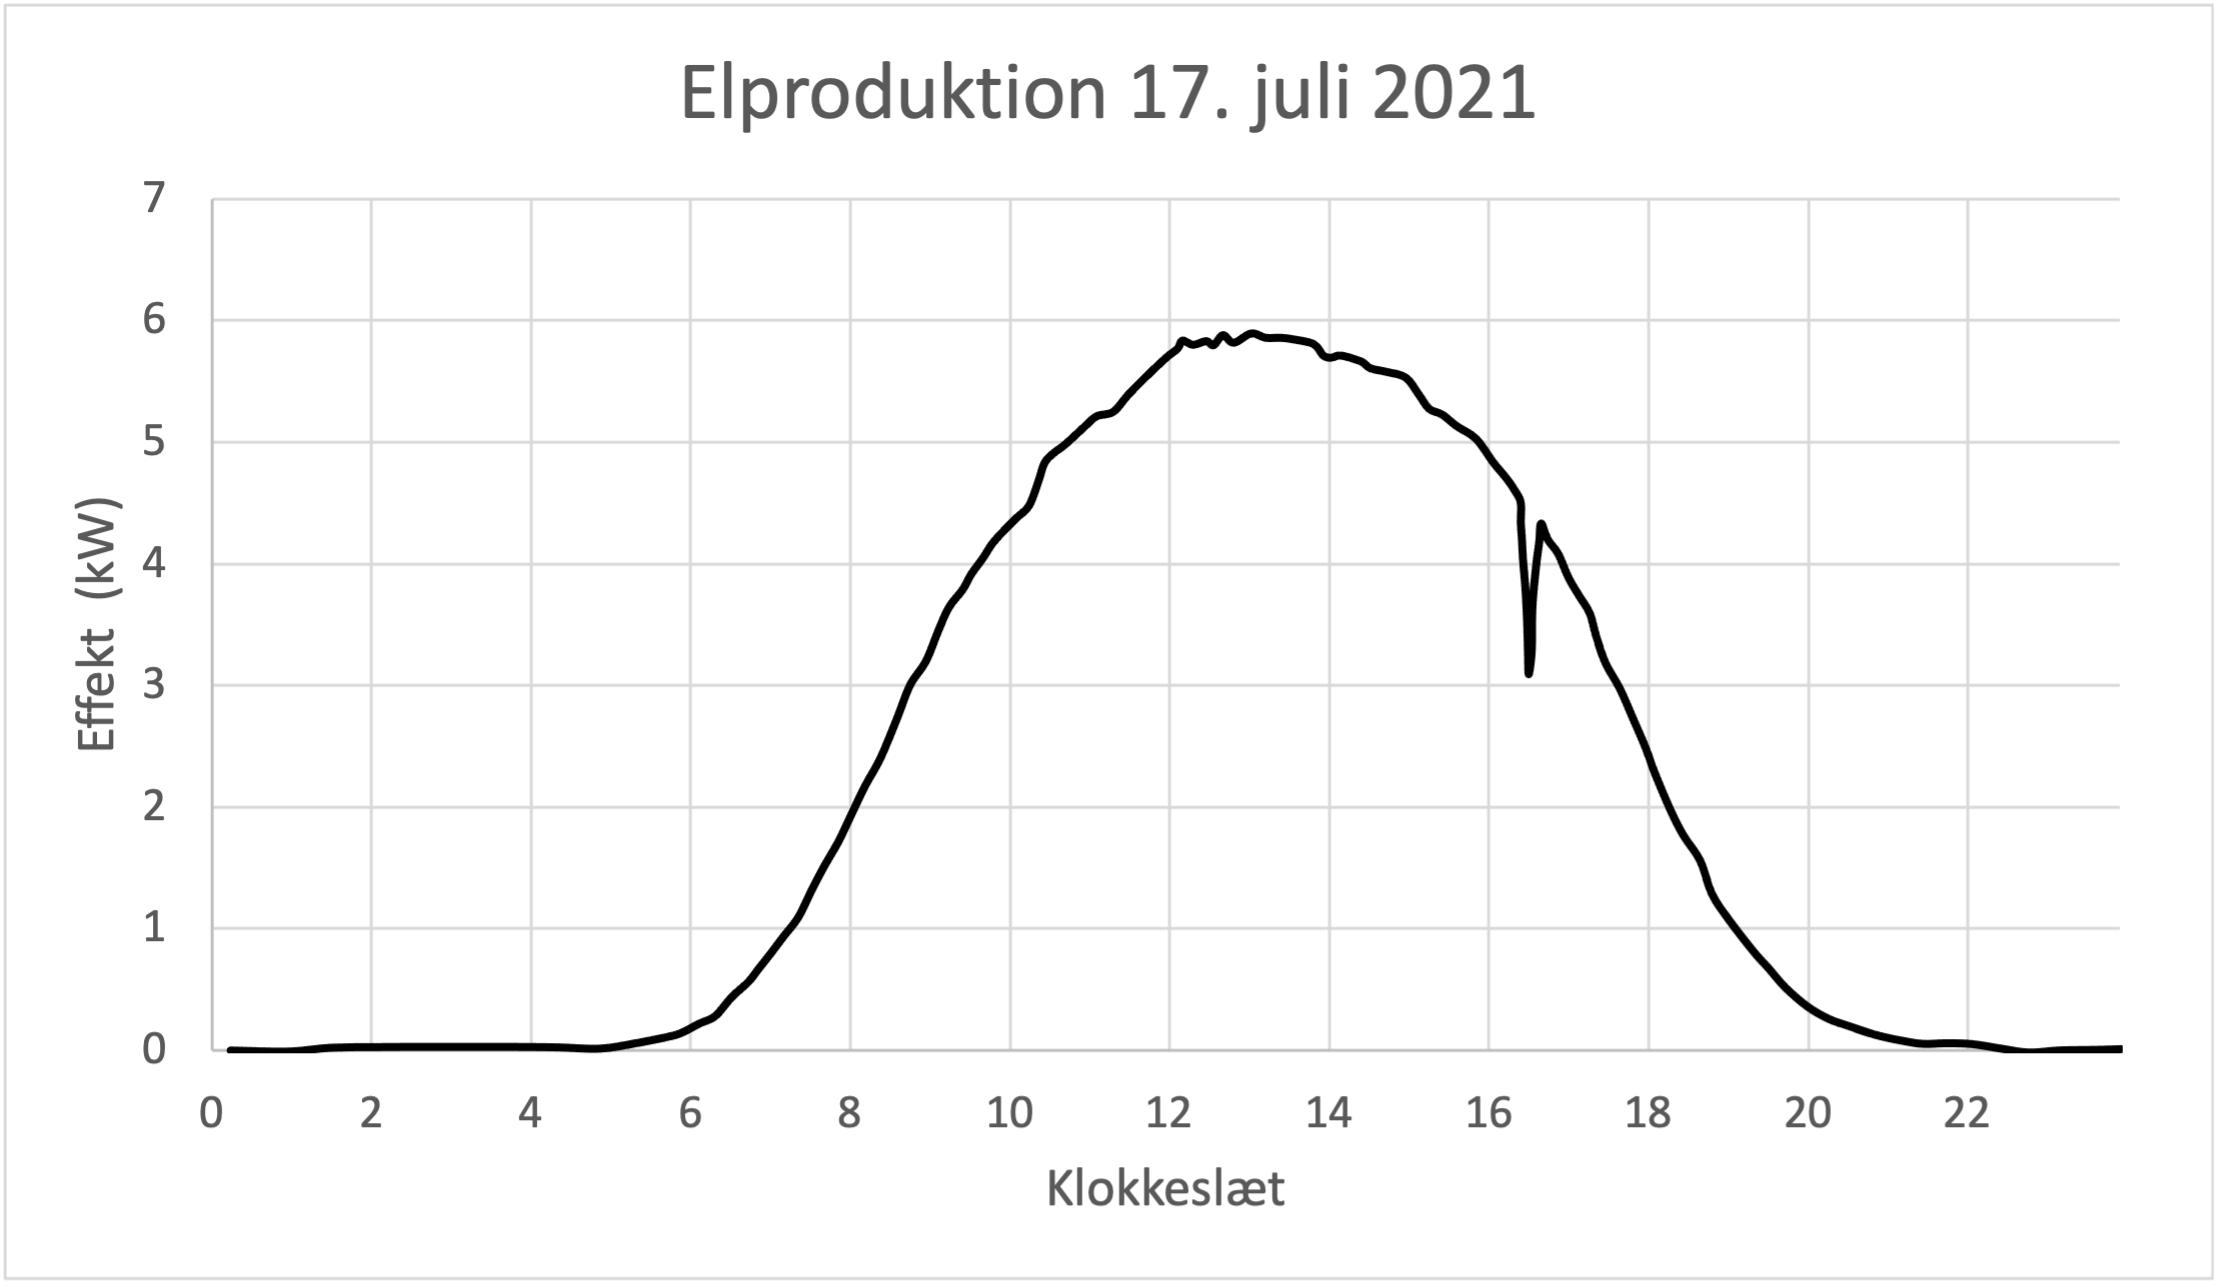 Elproduktion 17. juli 2021, Effekt (kW), Klokkeslæt